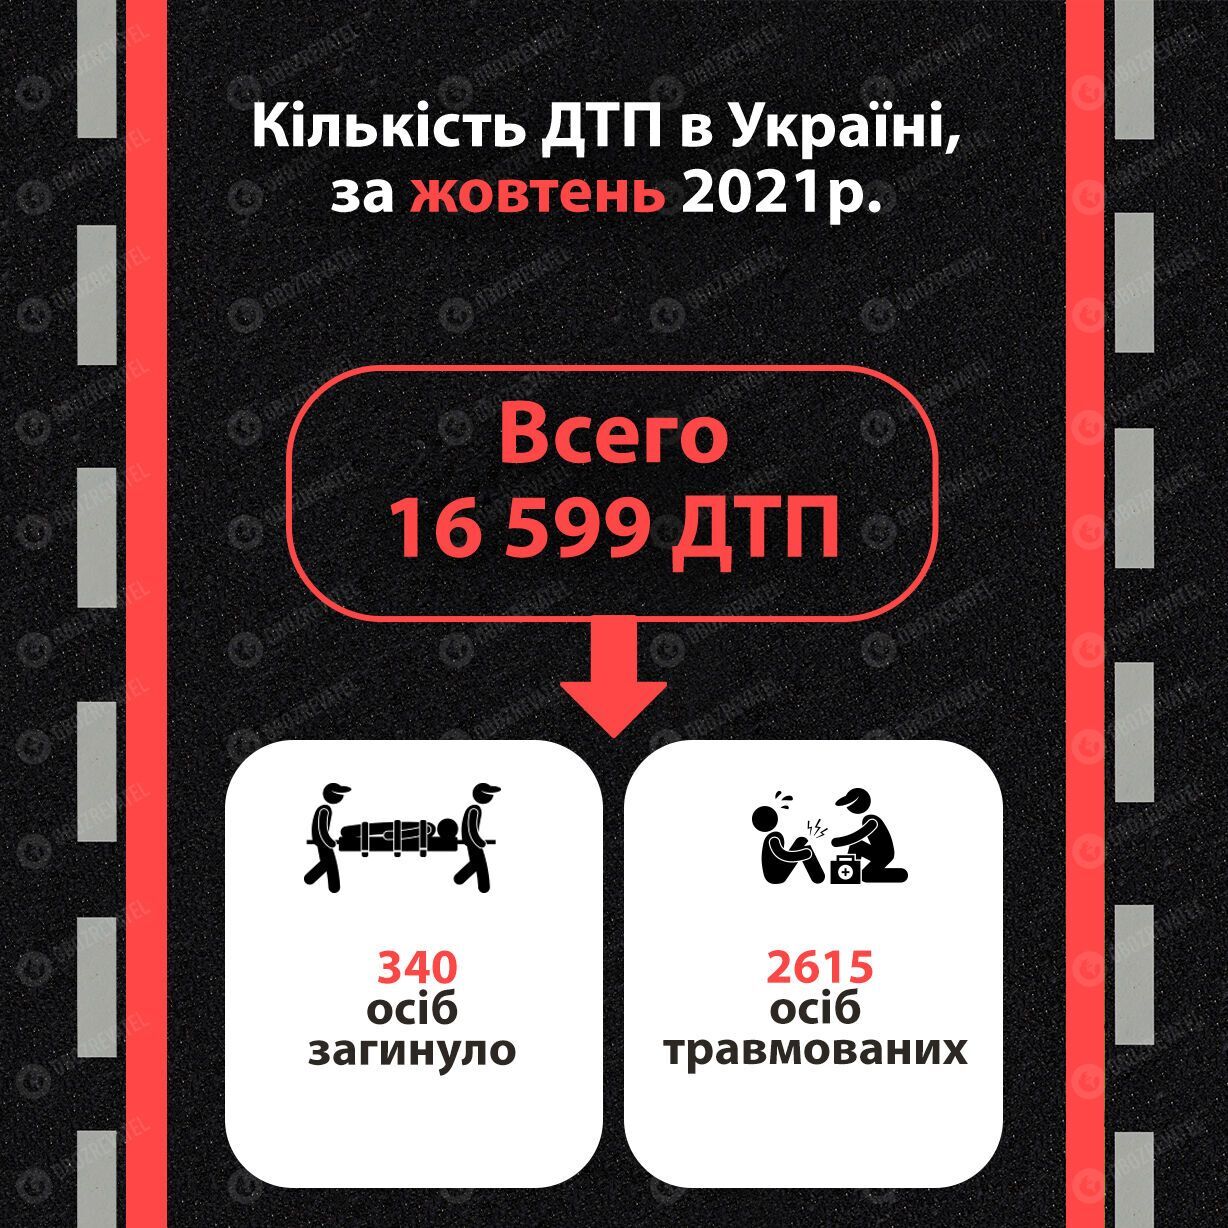 Статистика щодо ДТП в Україні за жовтень-2021